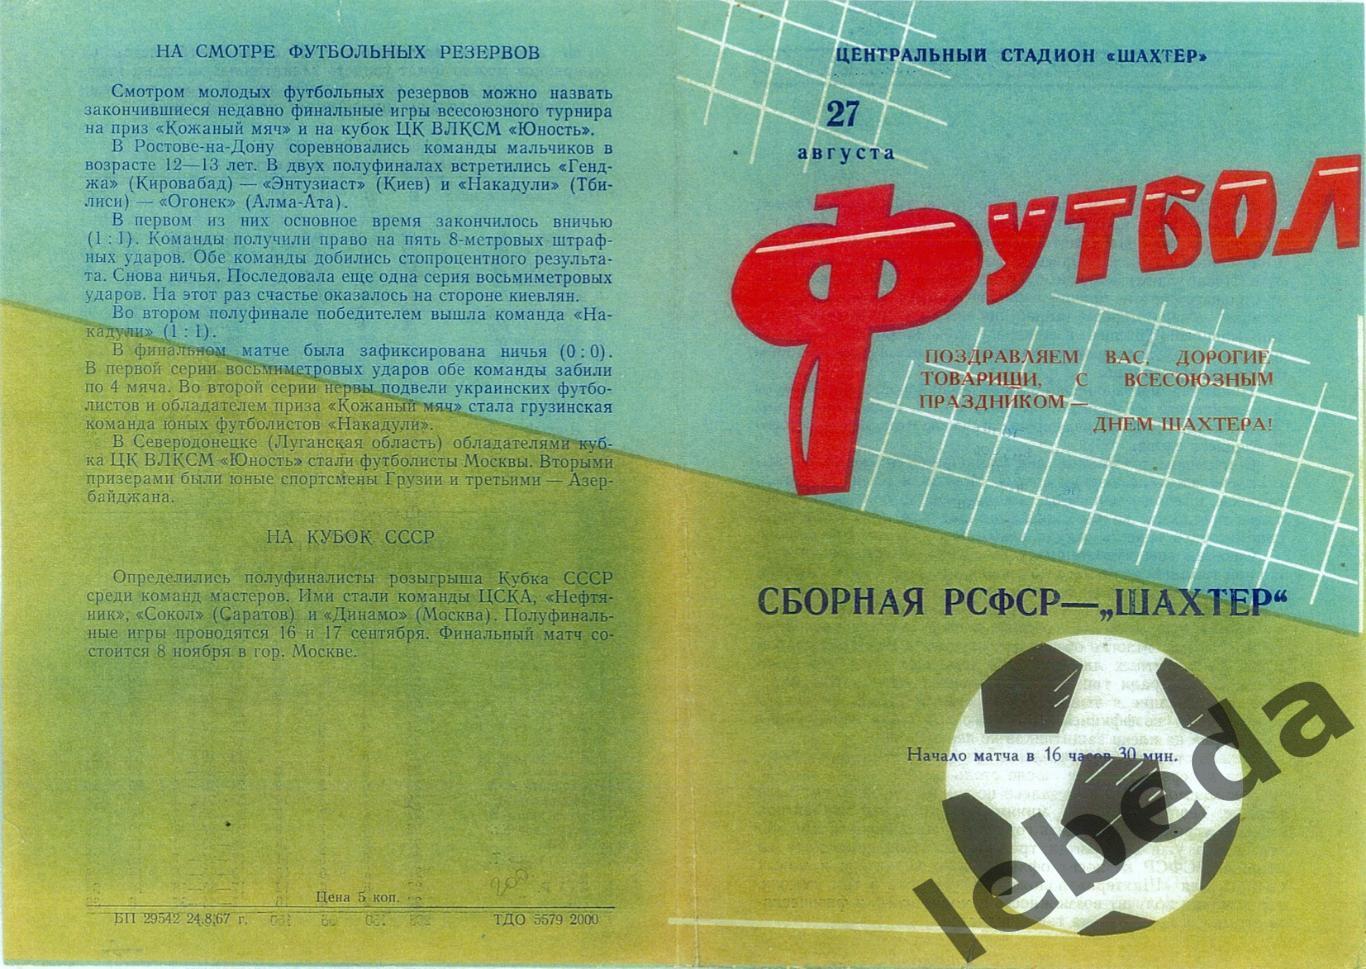 РСФСР - Шахтер Донецк - 1967 г. (27.08.67.) 1